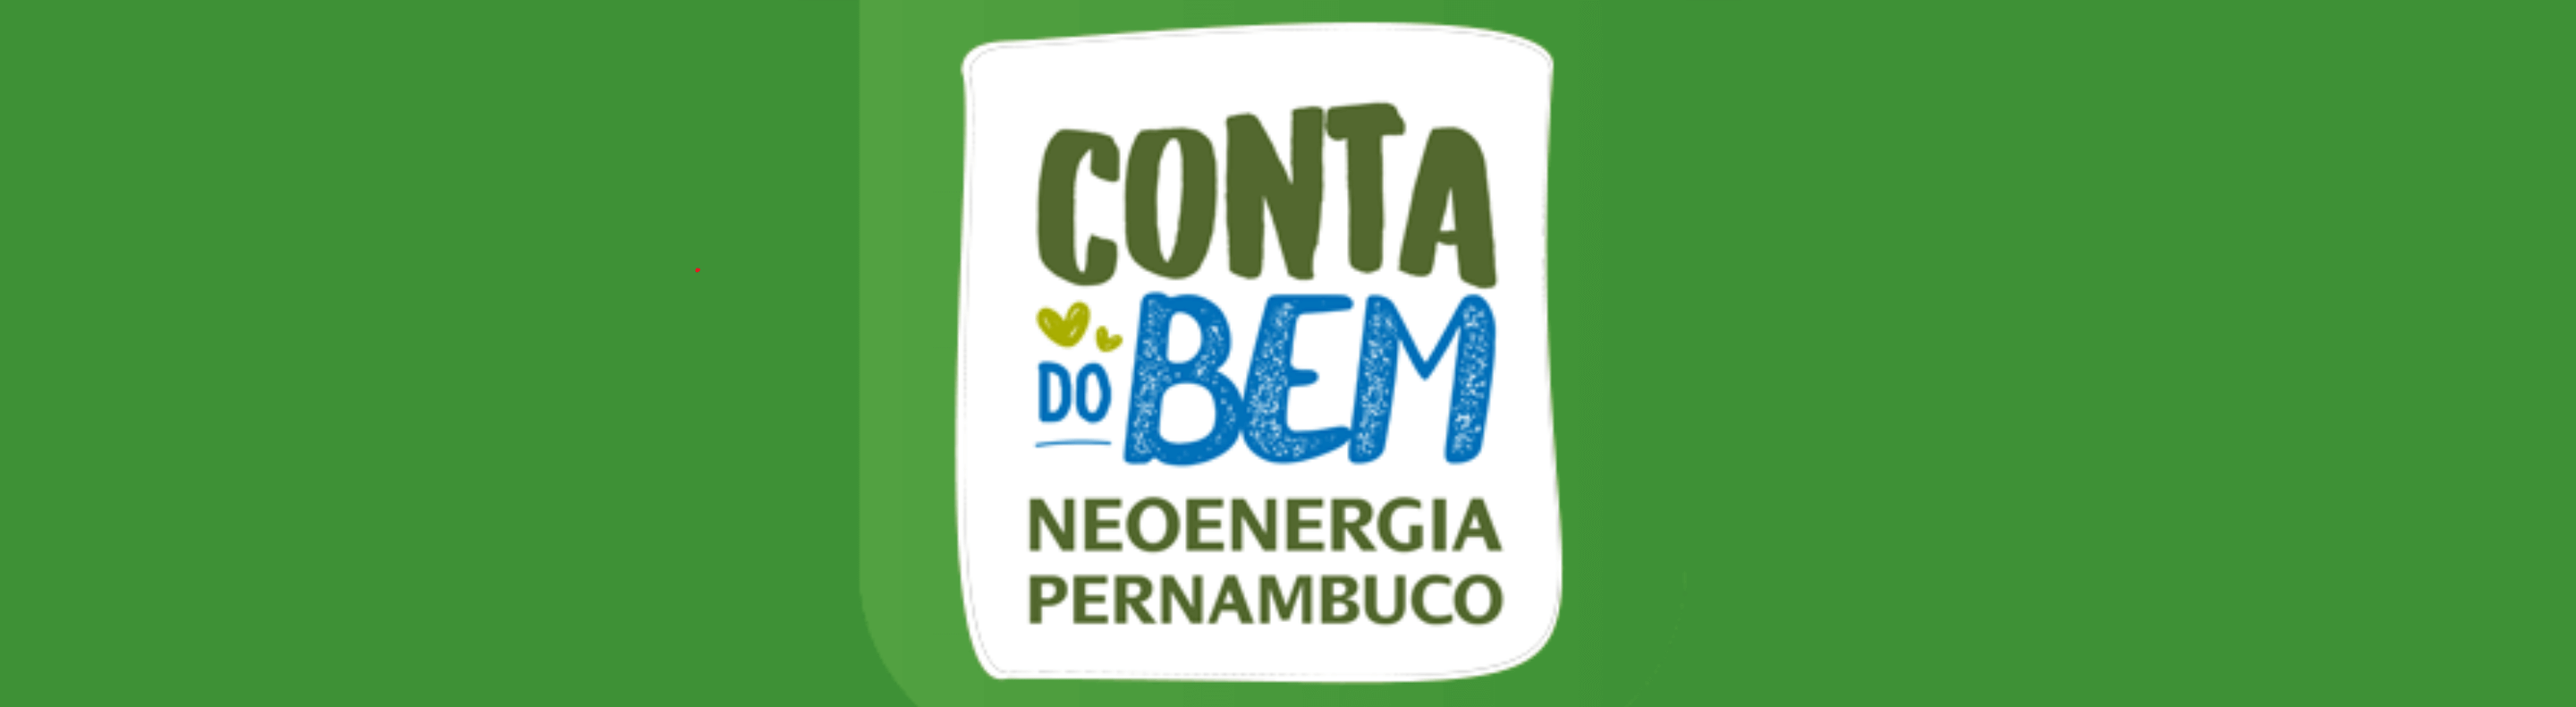 Arte criativa com o Projeto Conta do Bem da Neoenergia Pernambuco